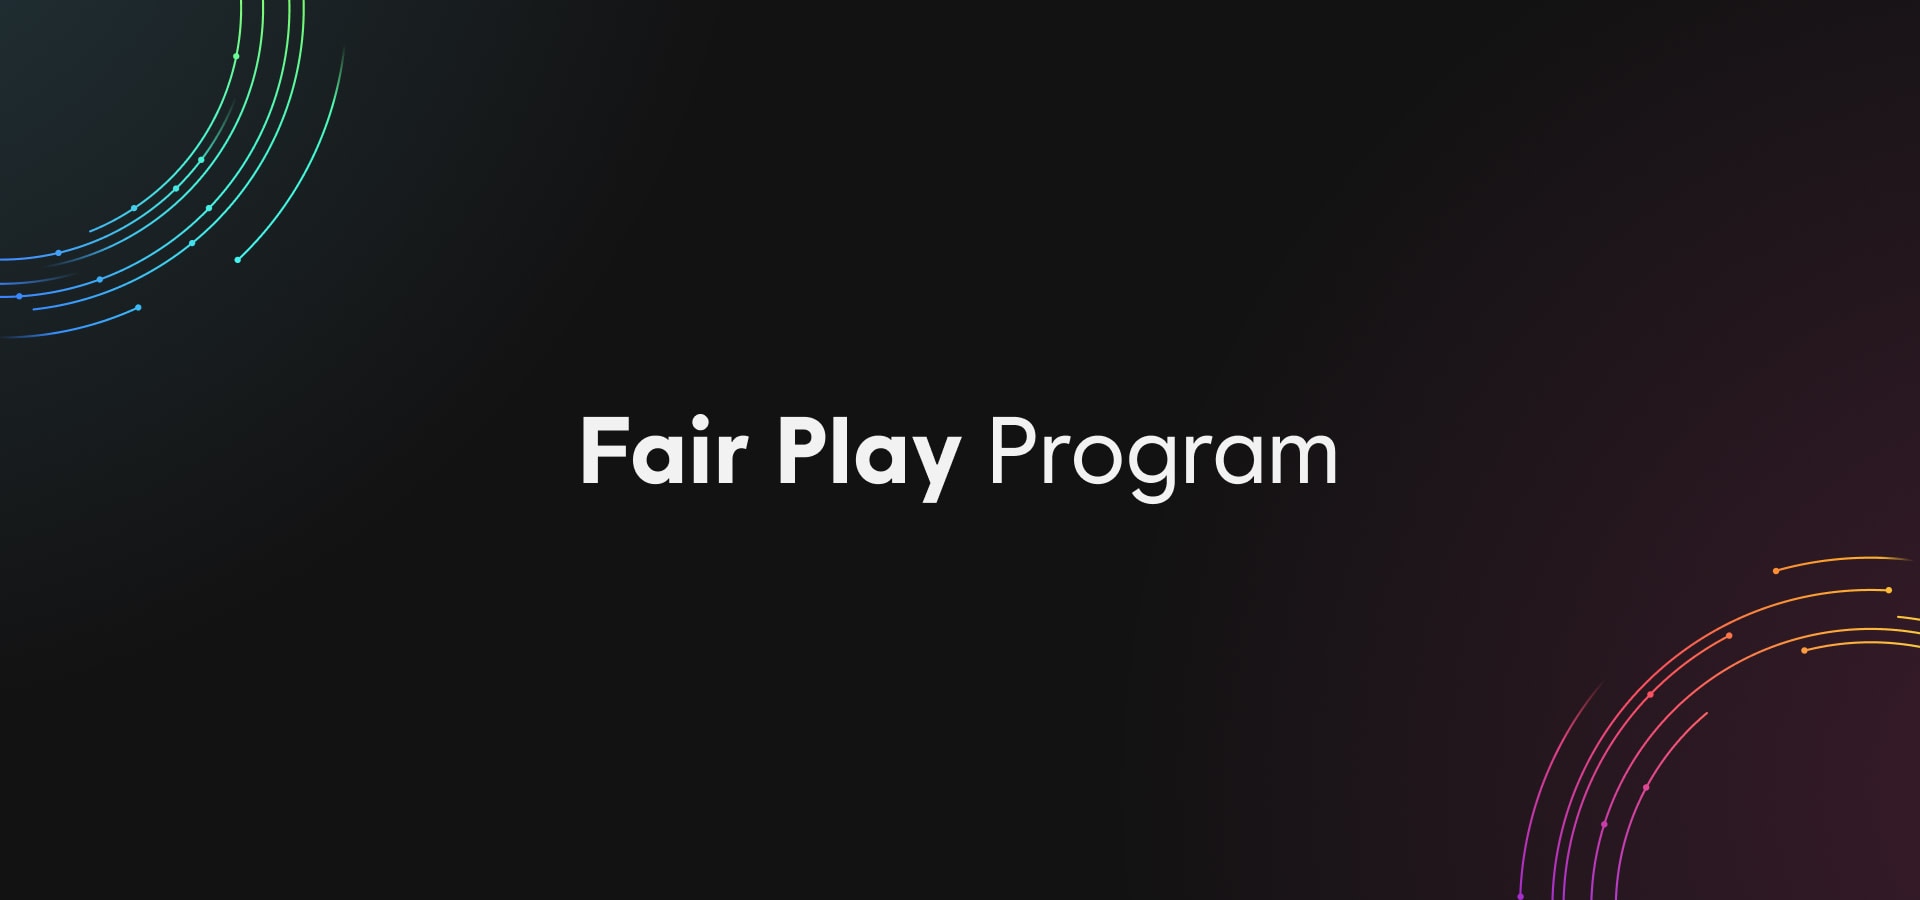 Fair Play Program